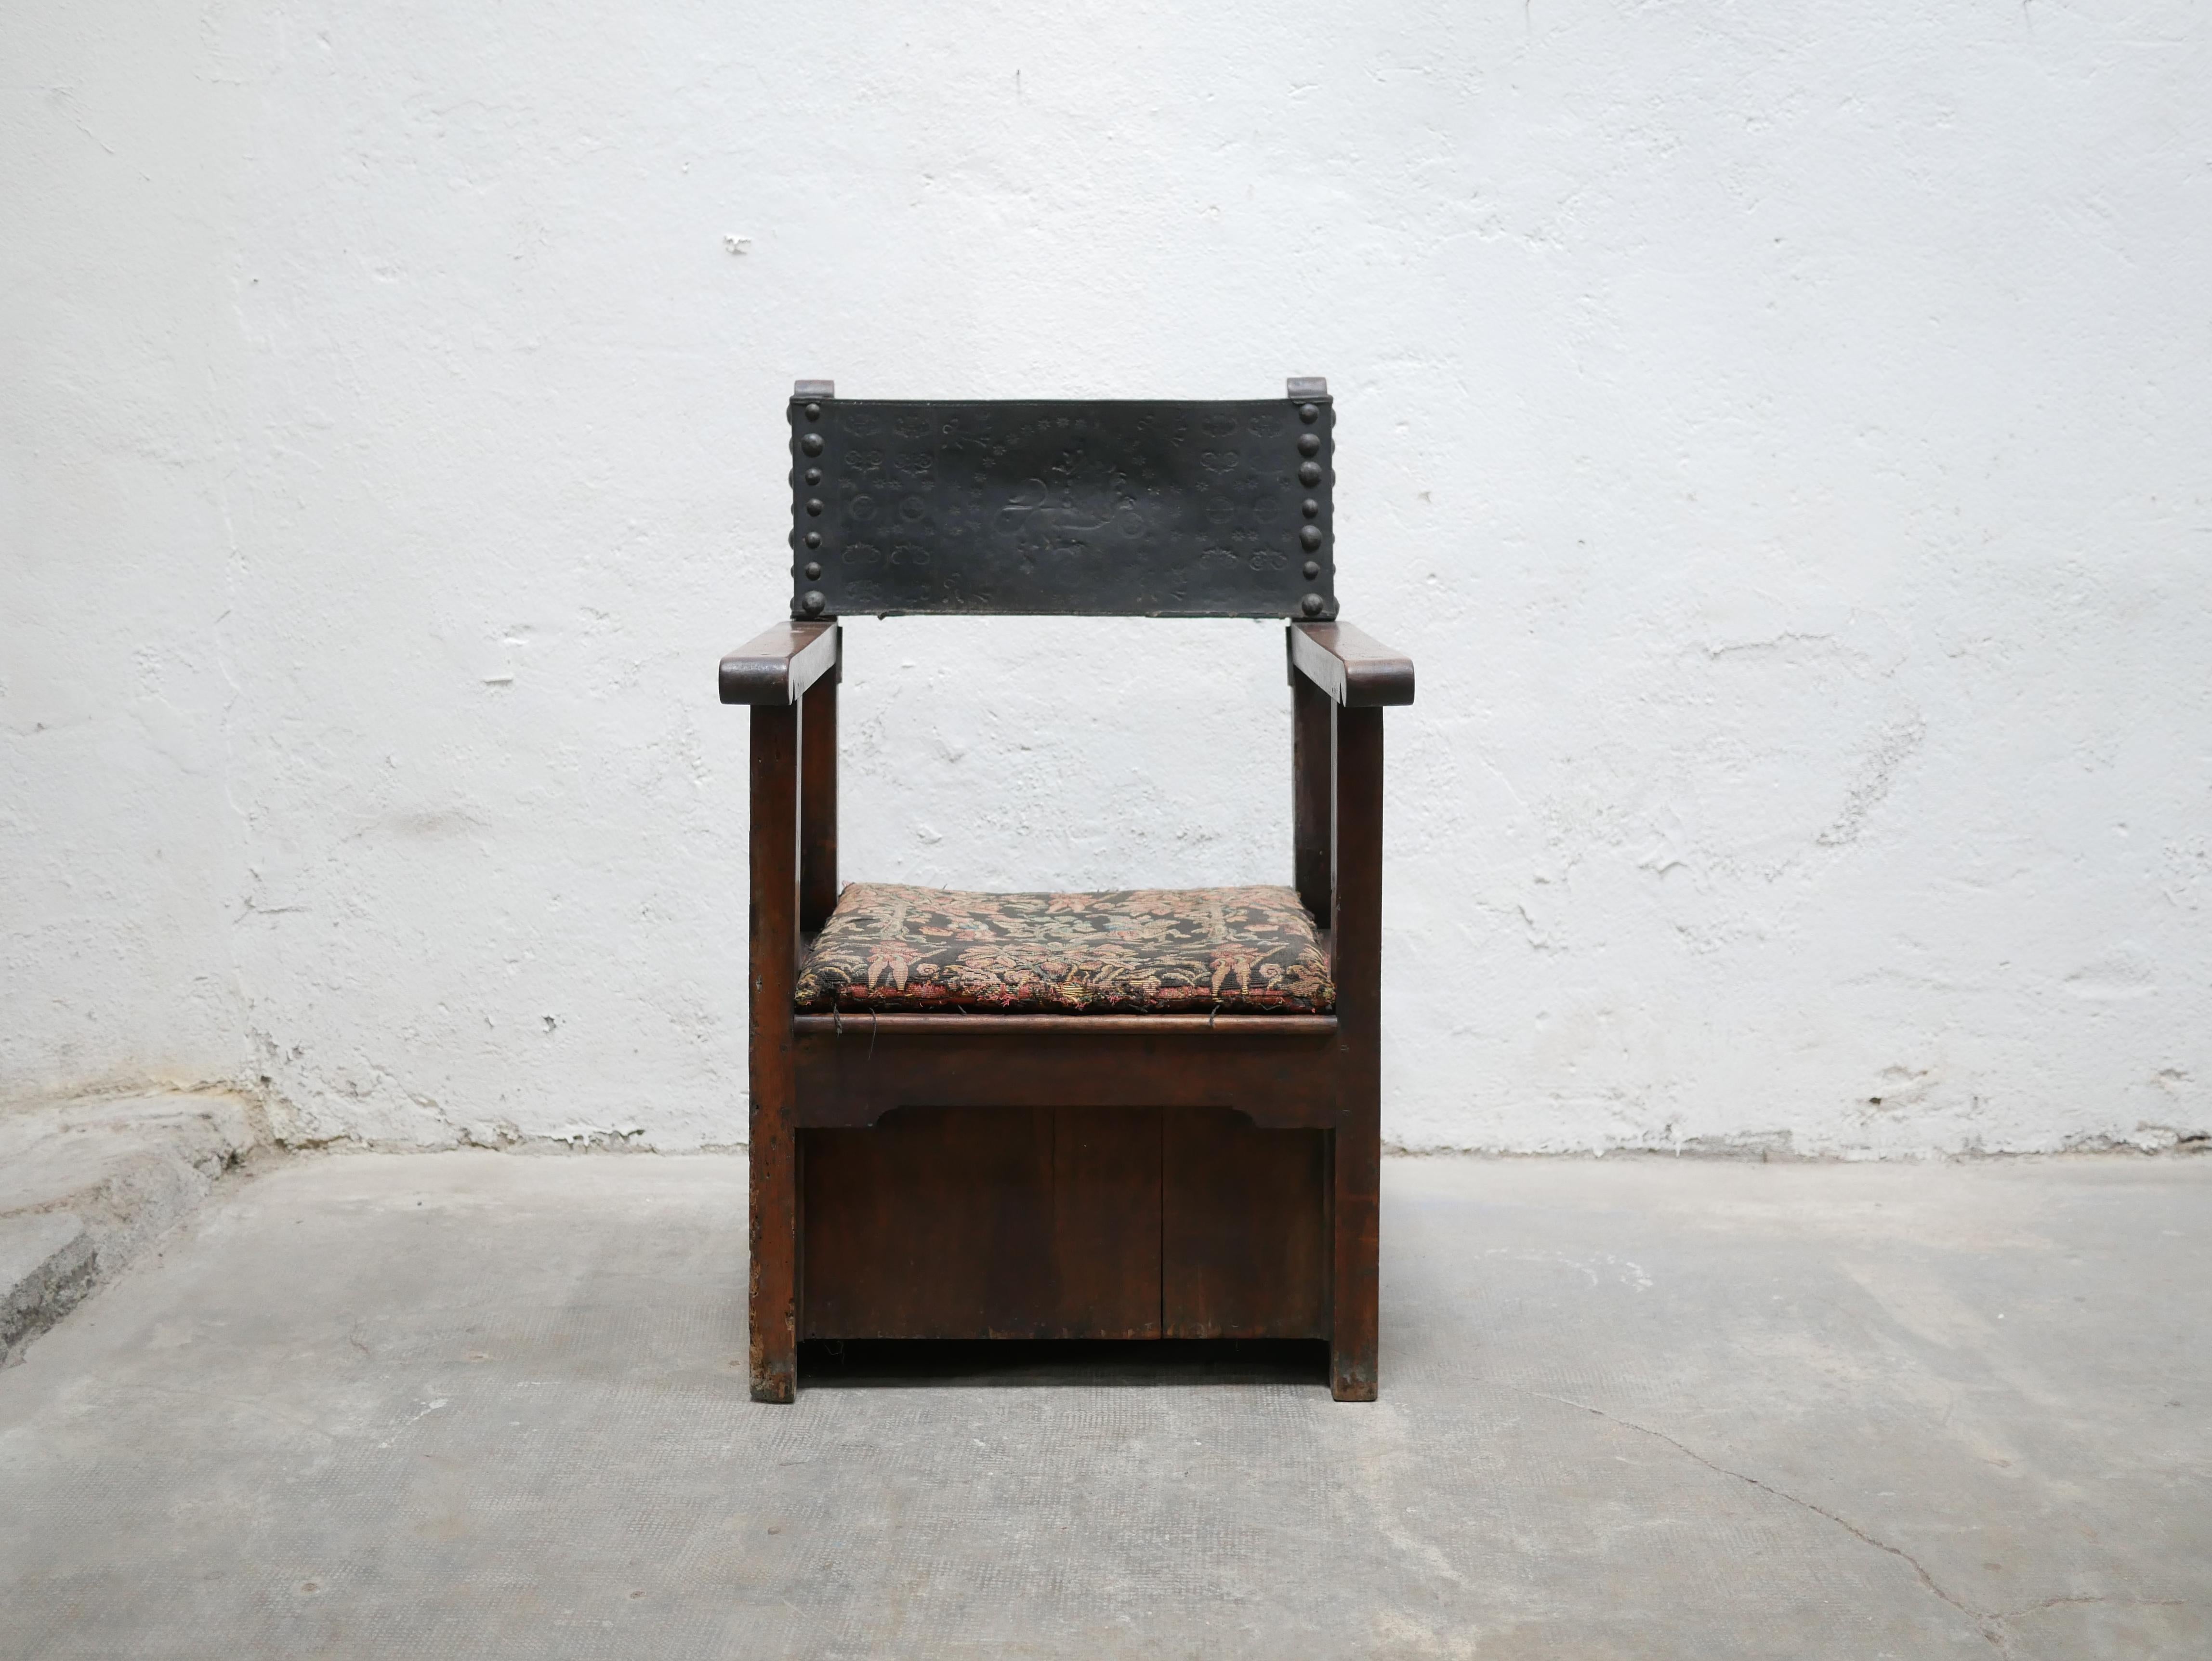 Fauteuil coffre en bois massif datant du 19ème siècle.

Le temps a bien patiné la chaise.
Il sera parfait dans une décoration brute, sincère et authentique, dans une décoration wabi-sabi ou dans un univers où les styles se mélangent.
On